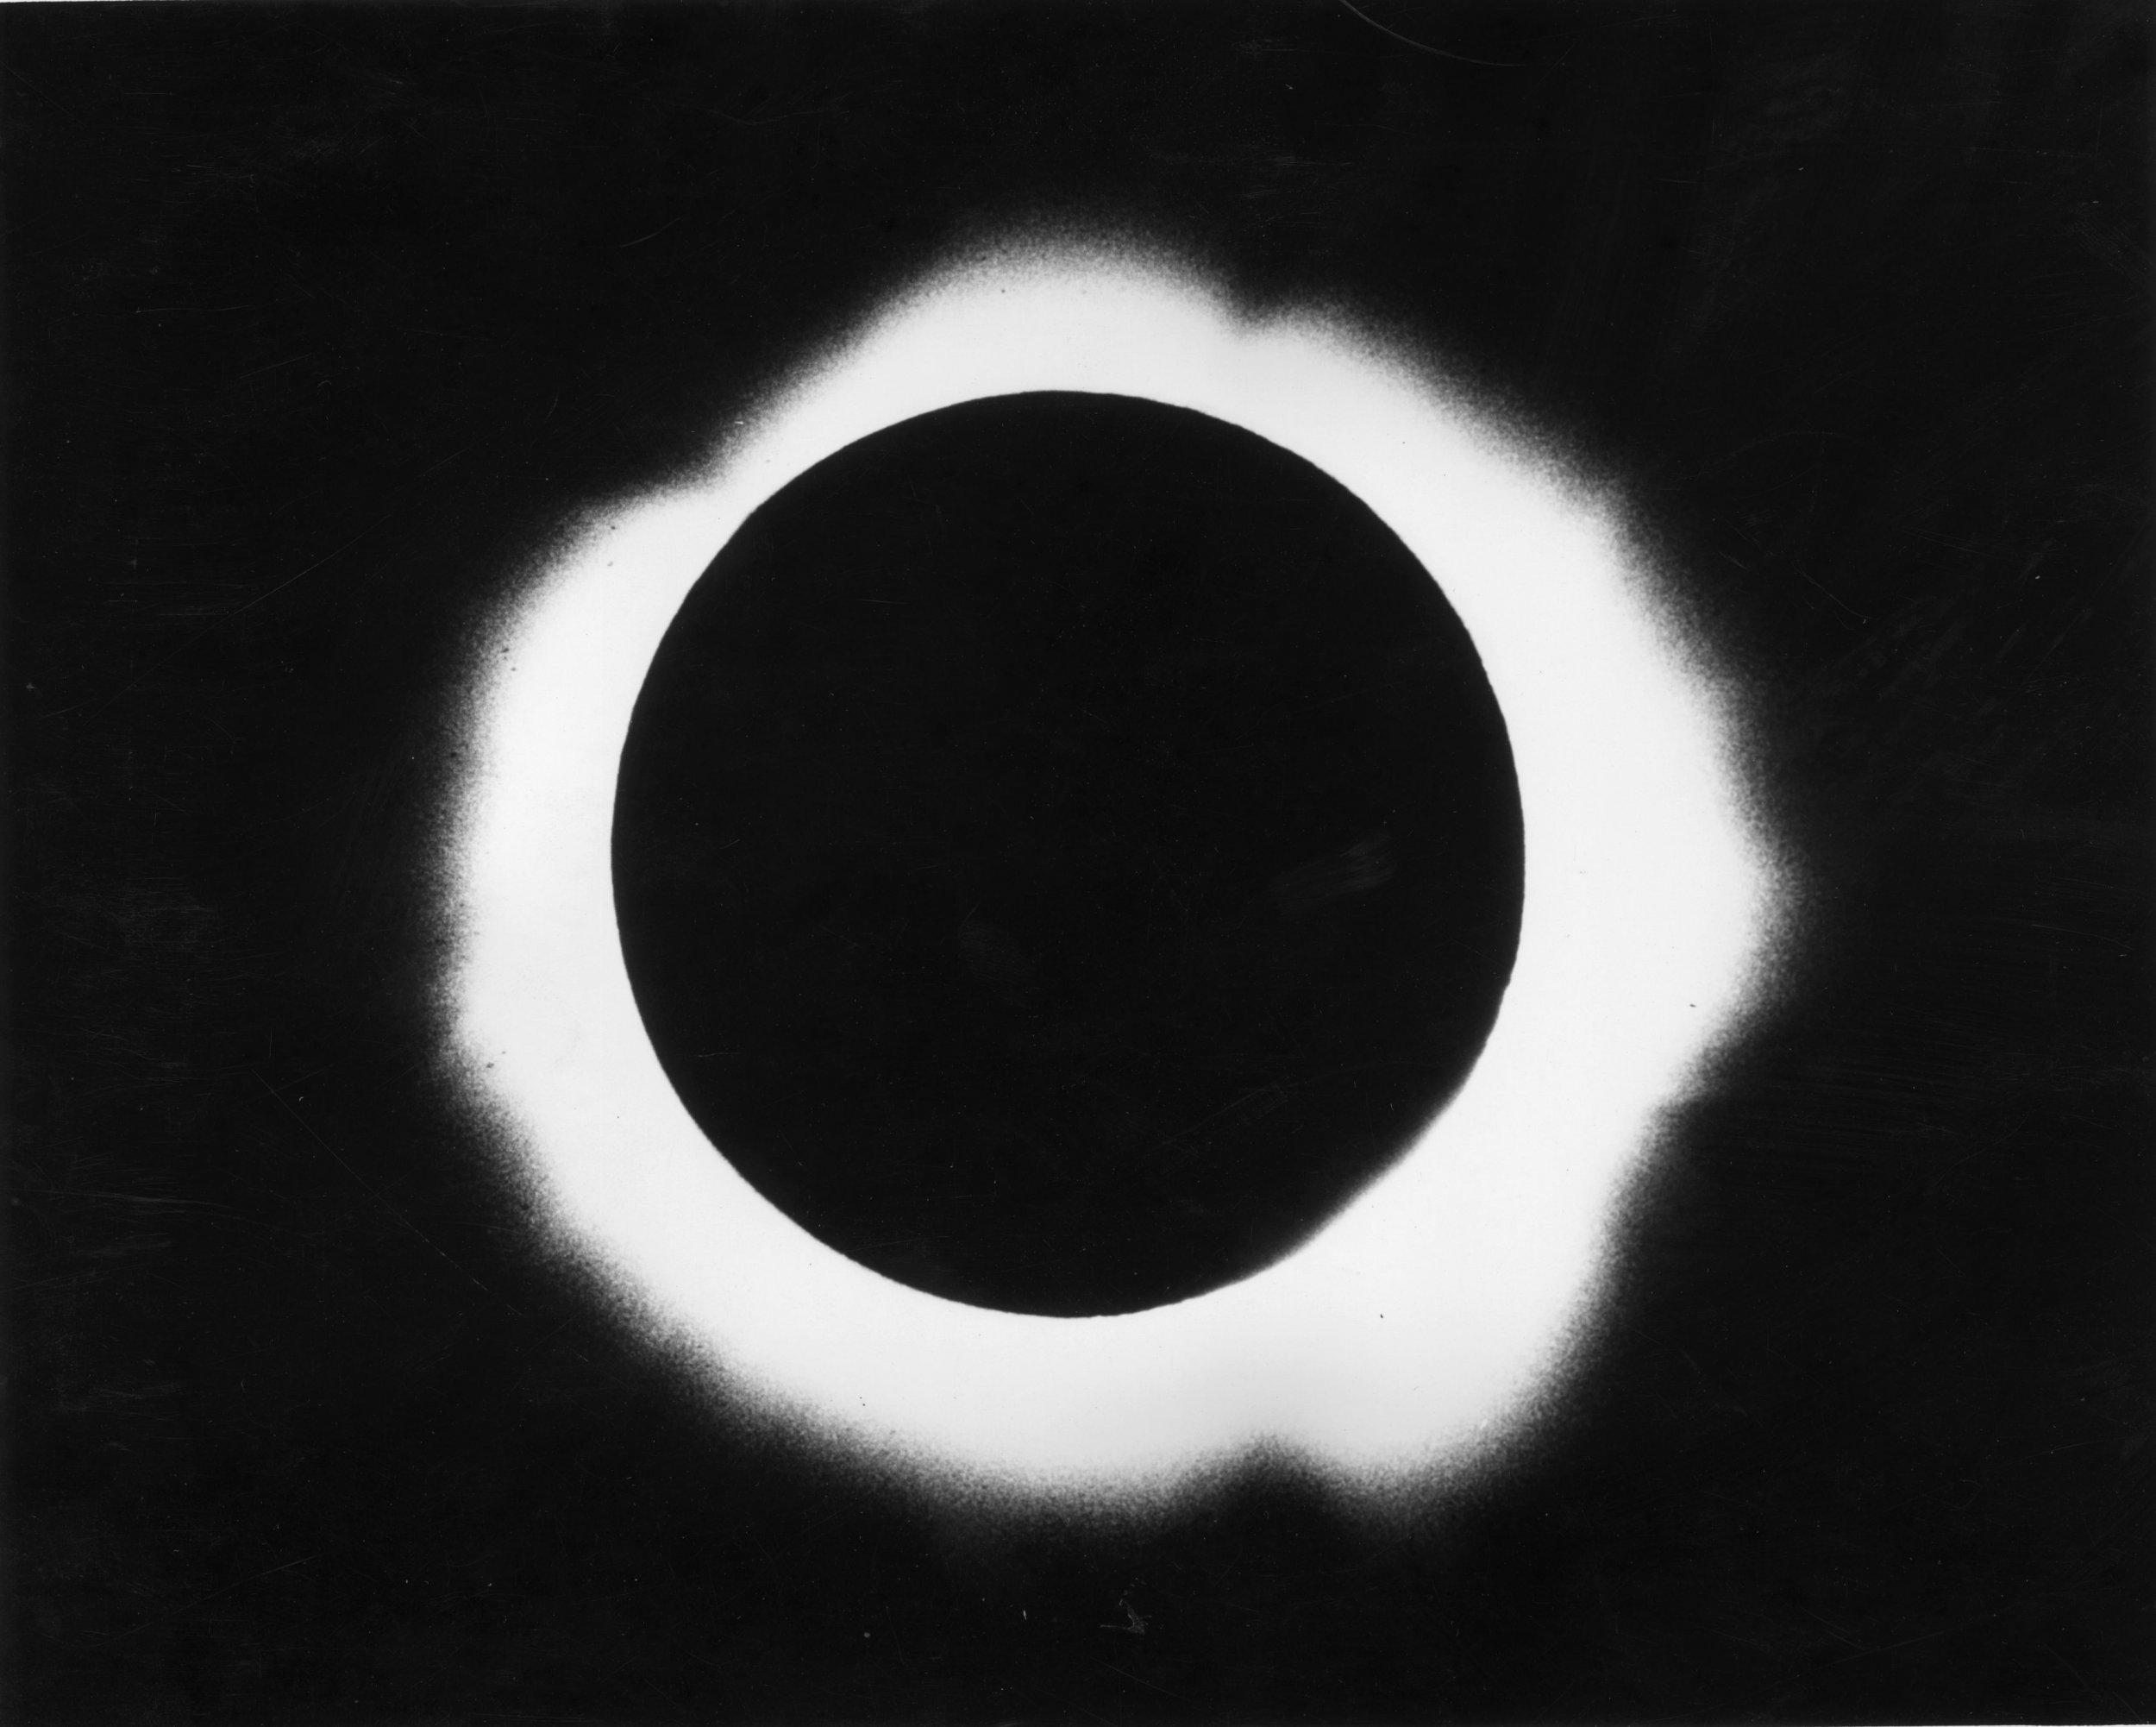 Sun eclipse 1970